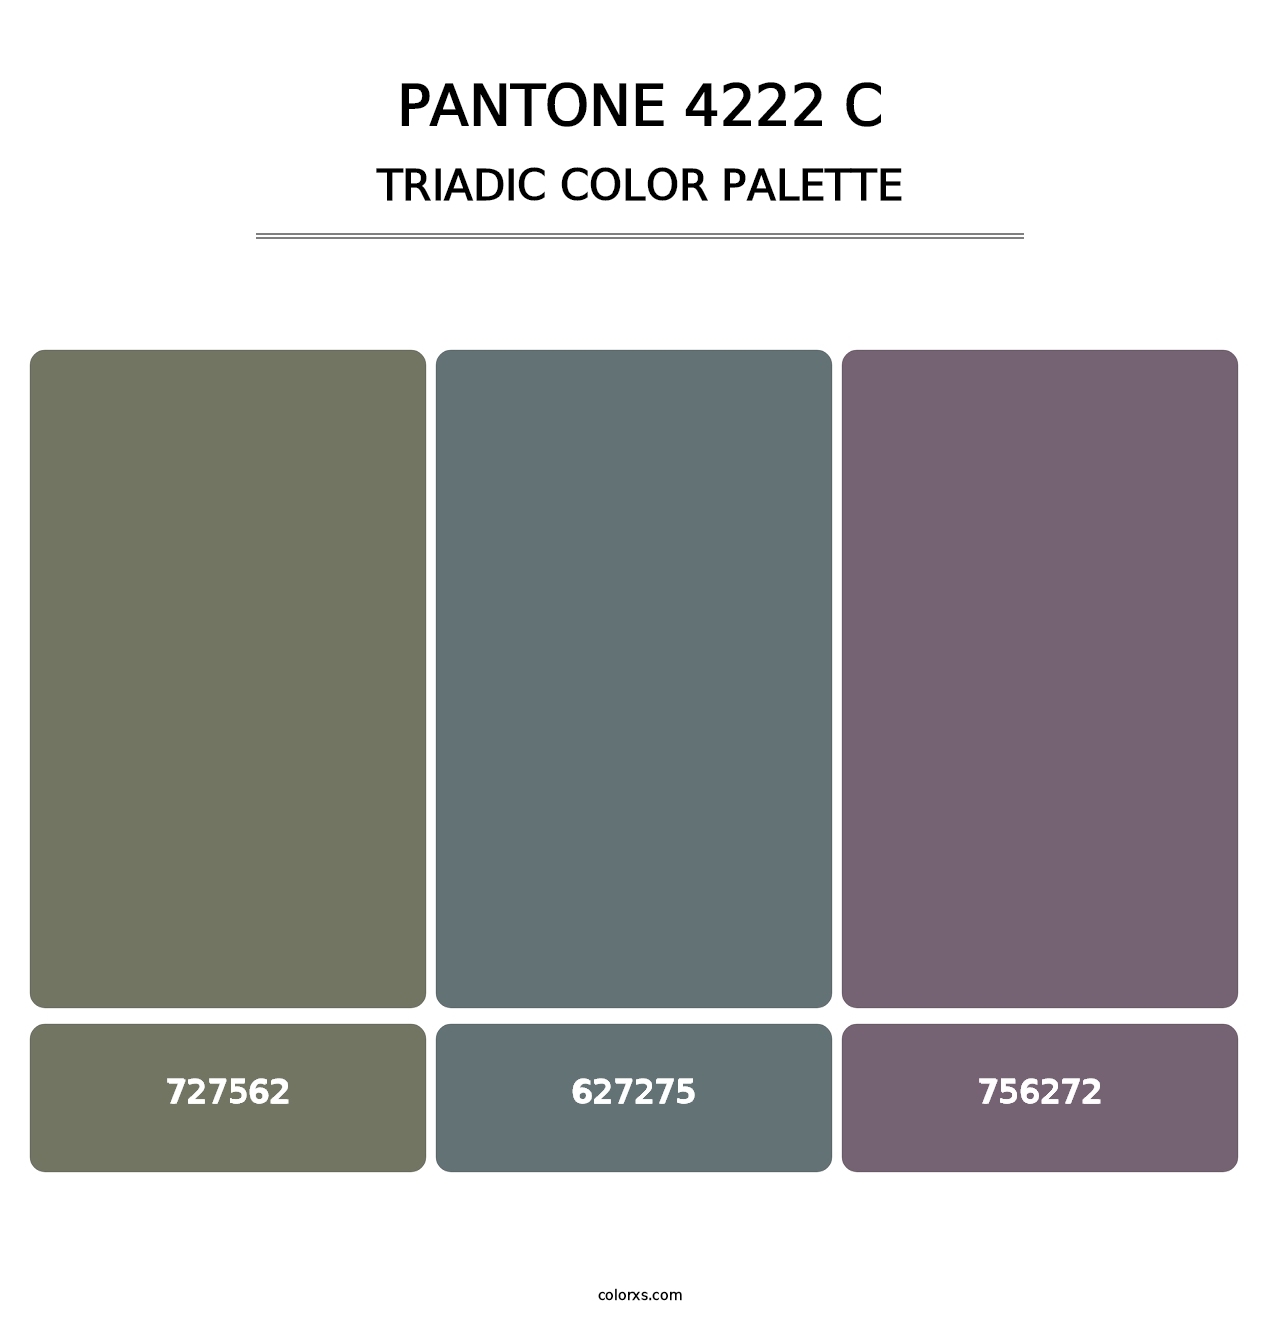 PANTONE 4222 C - Triadic Color Palette